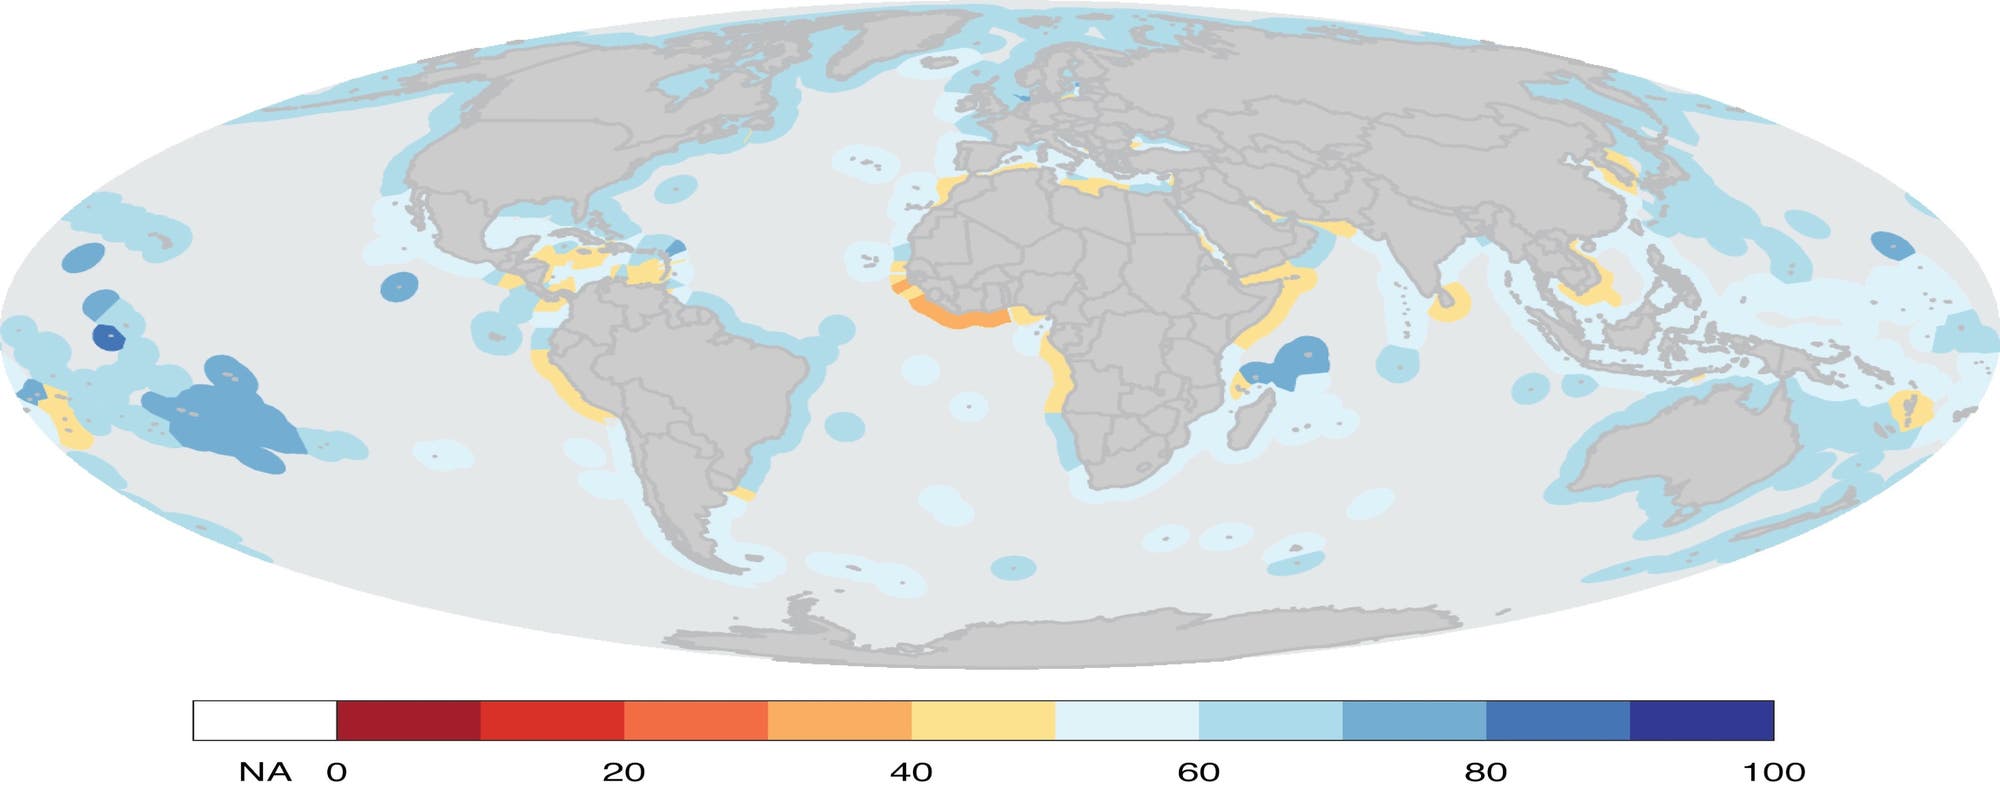 Ozean-Index: Übereinstimmung von Zielen und Ist-Zustand